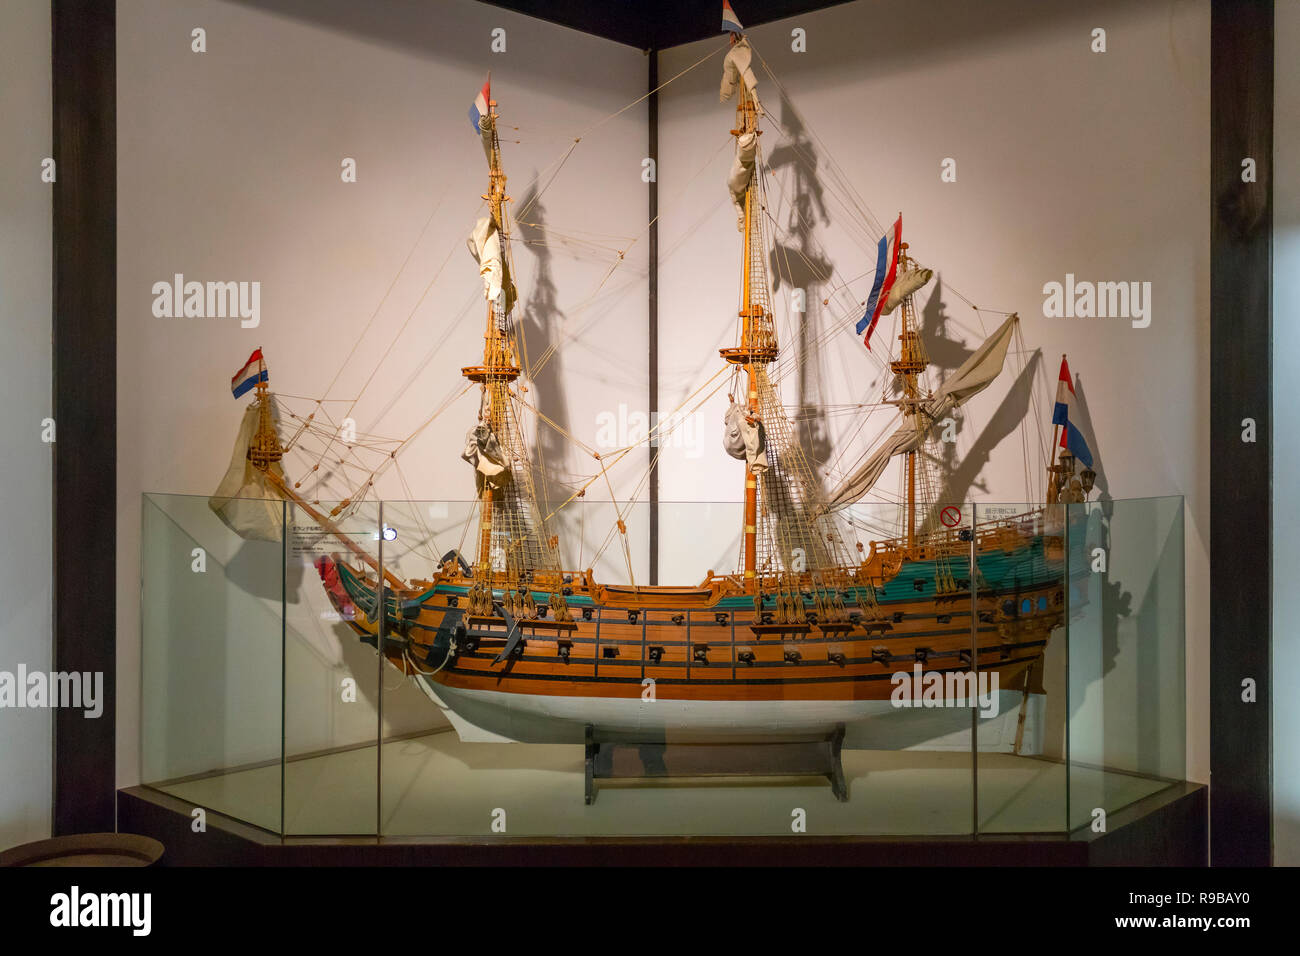 Nagasaki, Japan - Oktober 22, 2018: Modell eines niederländischen Schiff aus dem 17. Jahrhundert in Dejima, Nagasaki ausgestellt Stockfoto